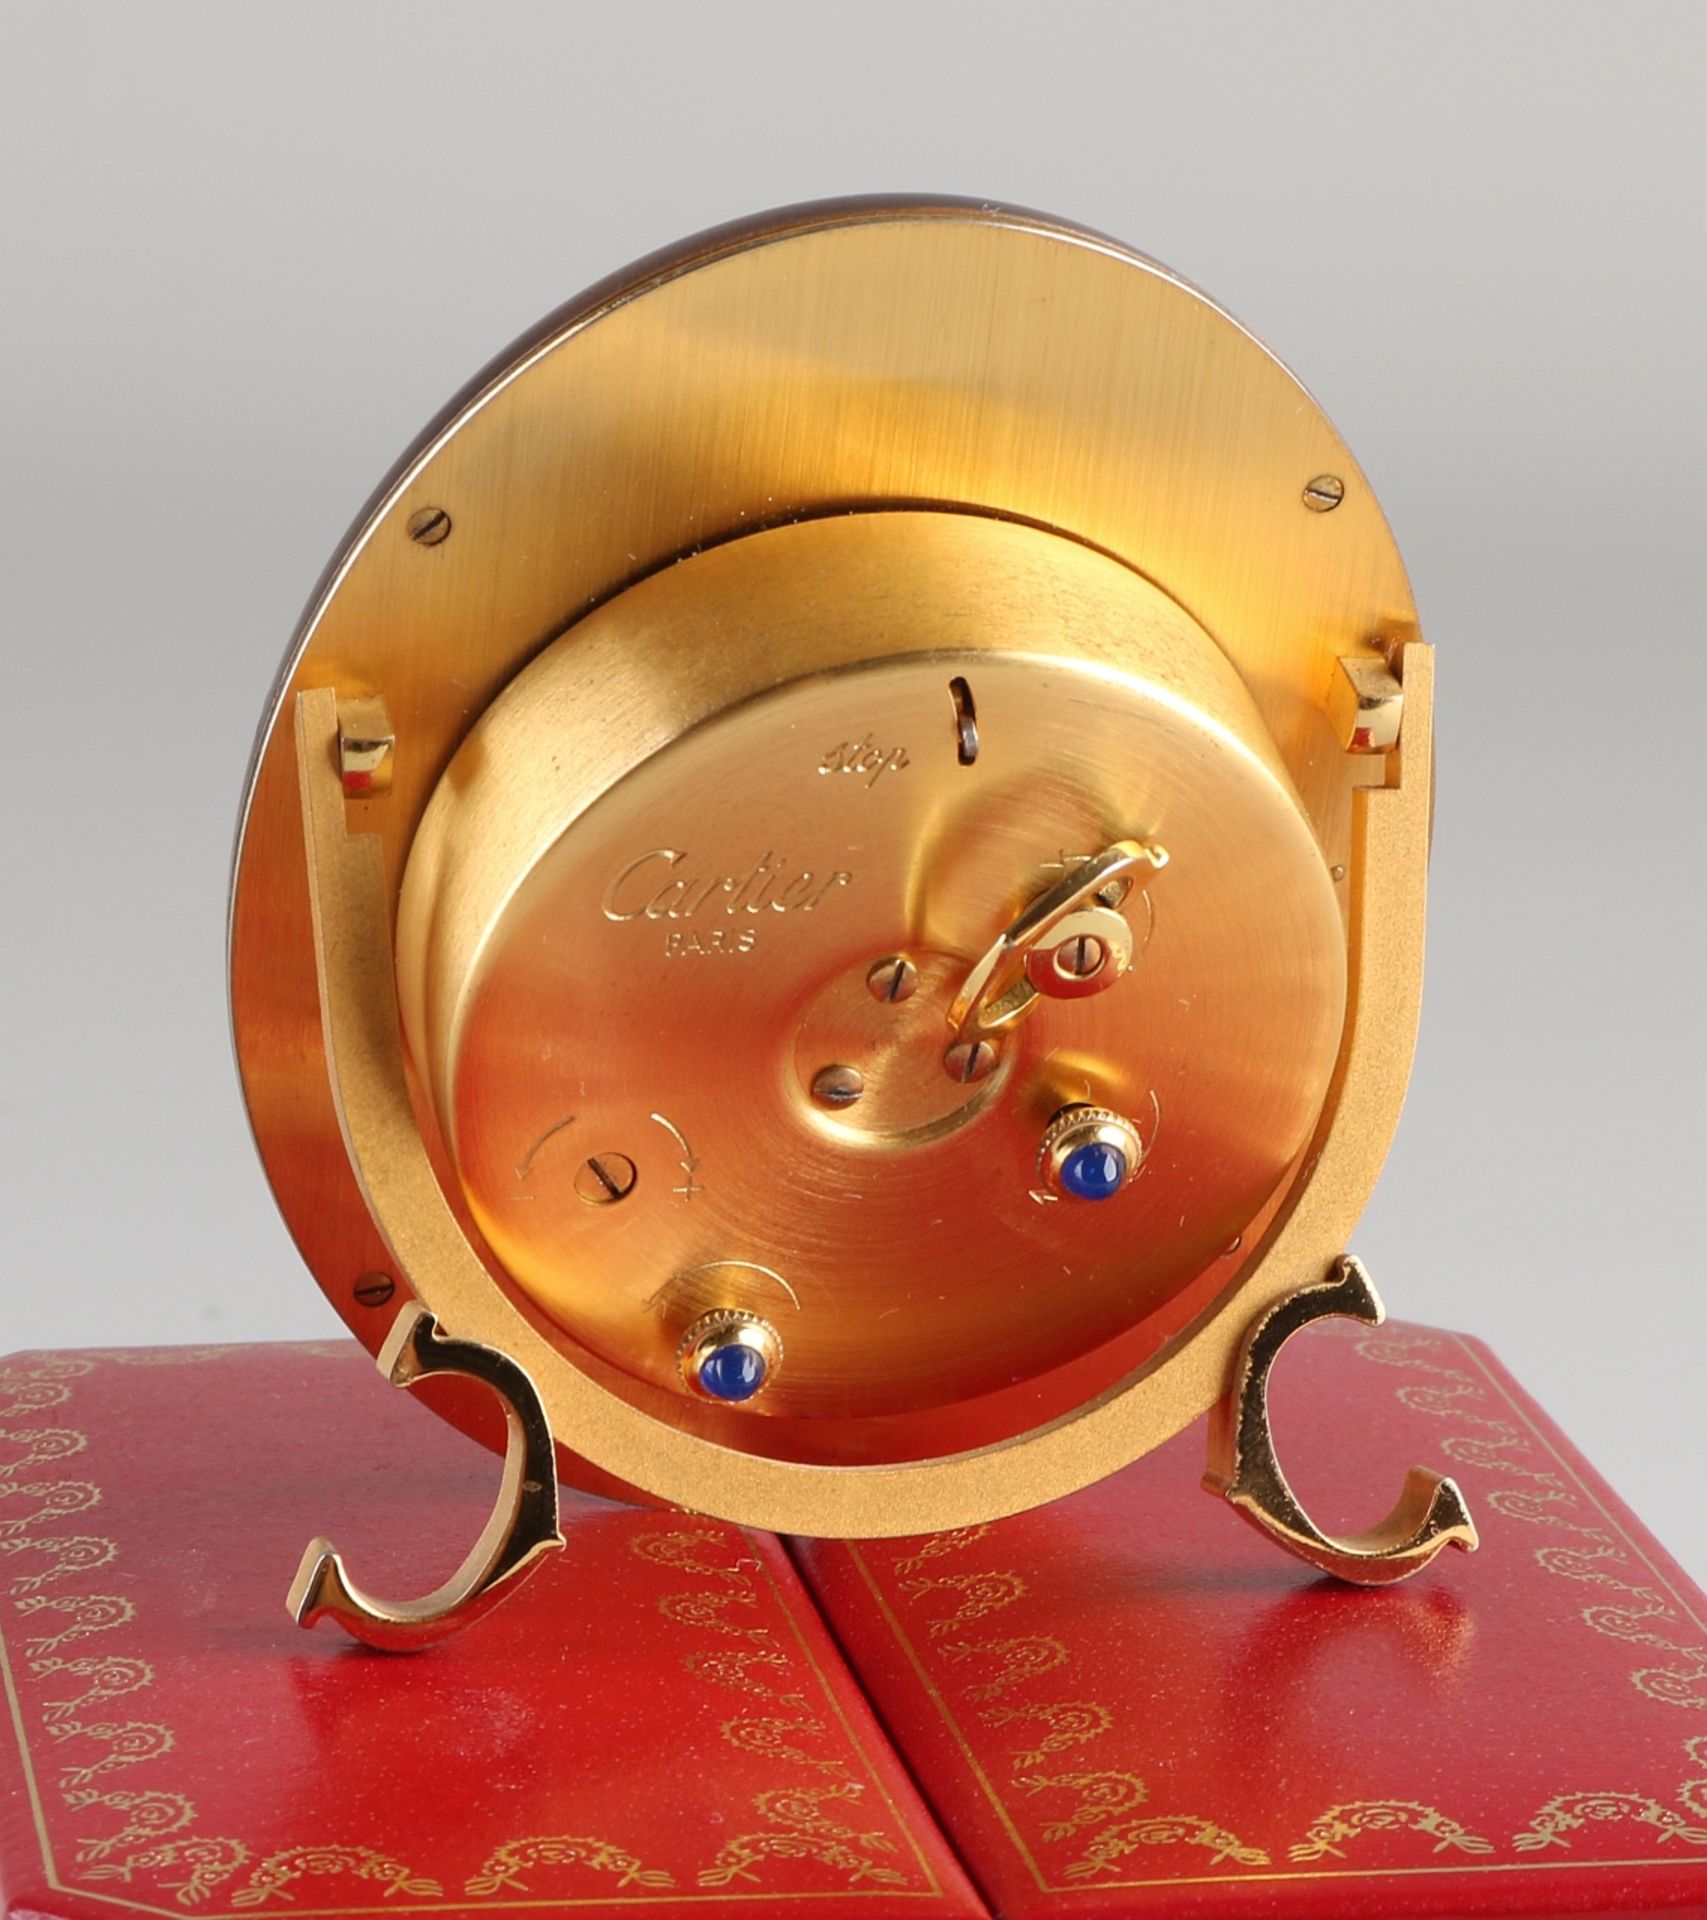 Cartier Tischuhr, ovales Modell, vergoldete mechanische Uhr mit braunem Rand, leicht beschädigt. - Image 3 of 3